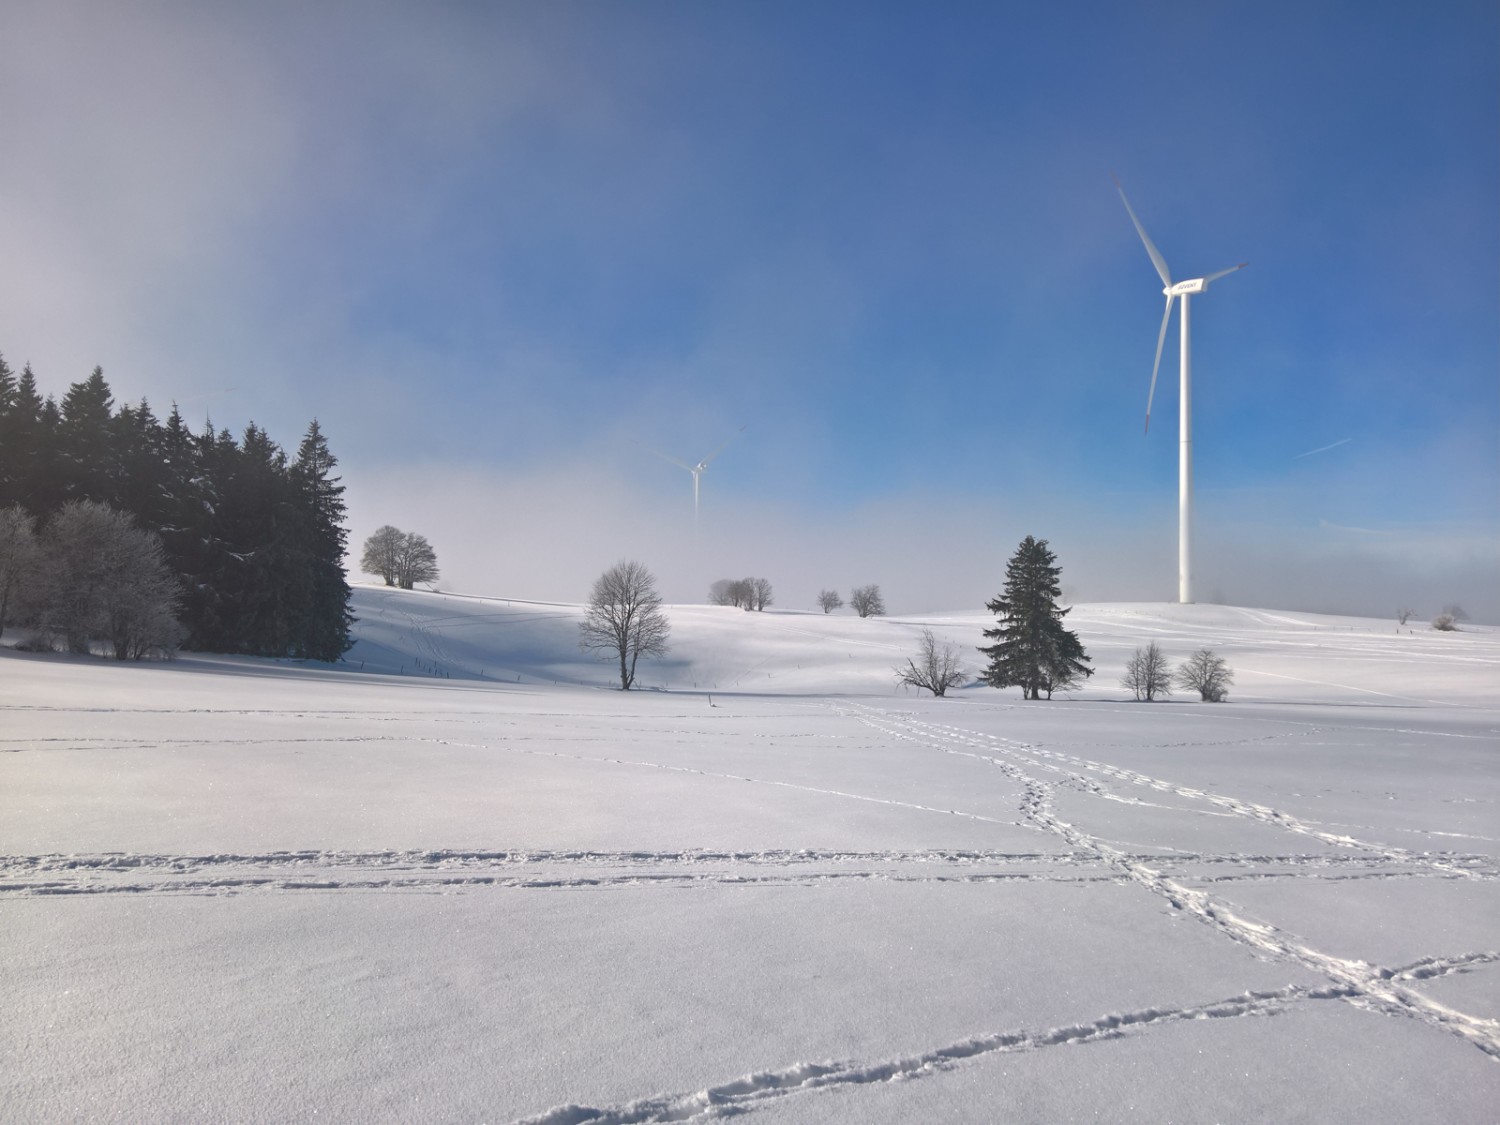 L’itinéraire passe aussi près des éoliennes élancées du parc éolien du Mont-Crosin. Photo: Andreas Staeger